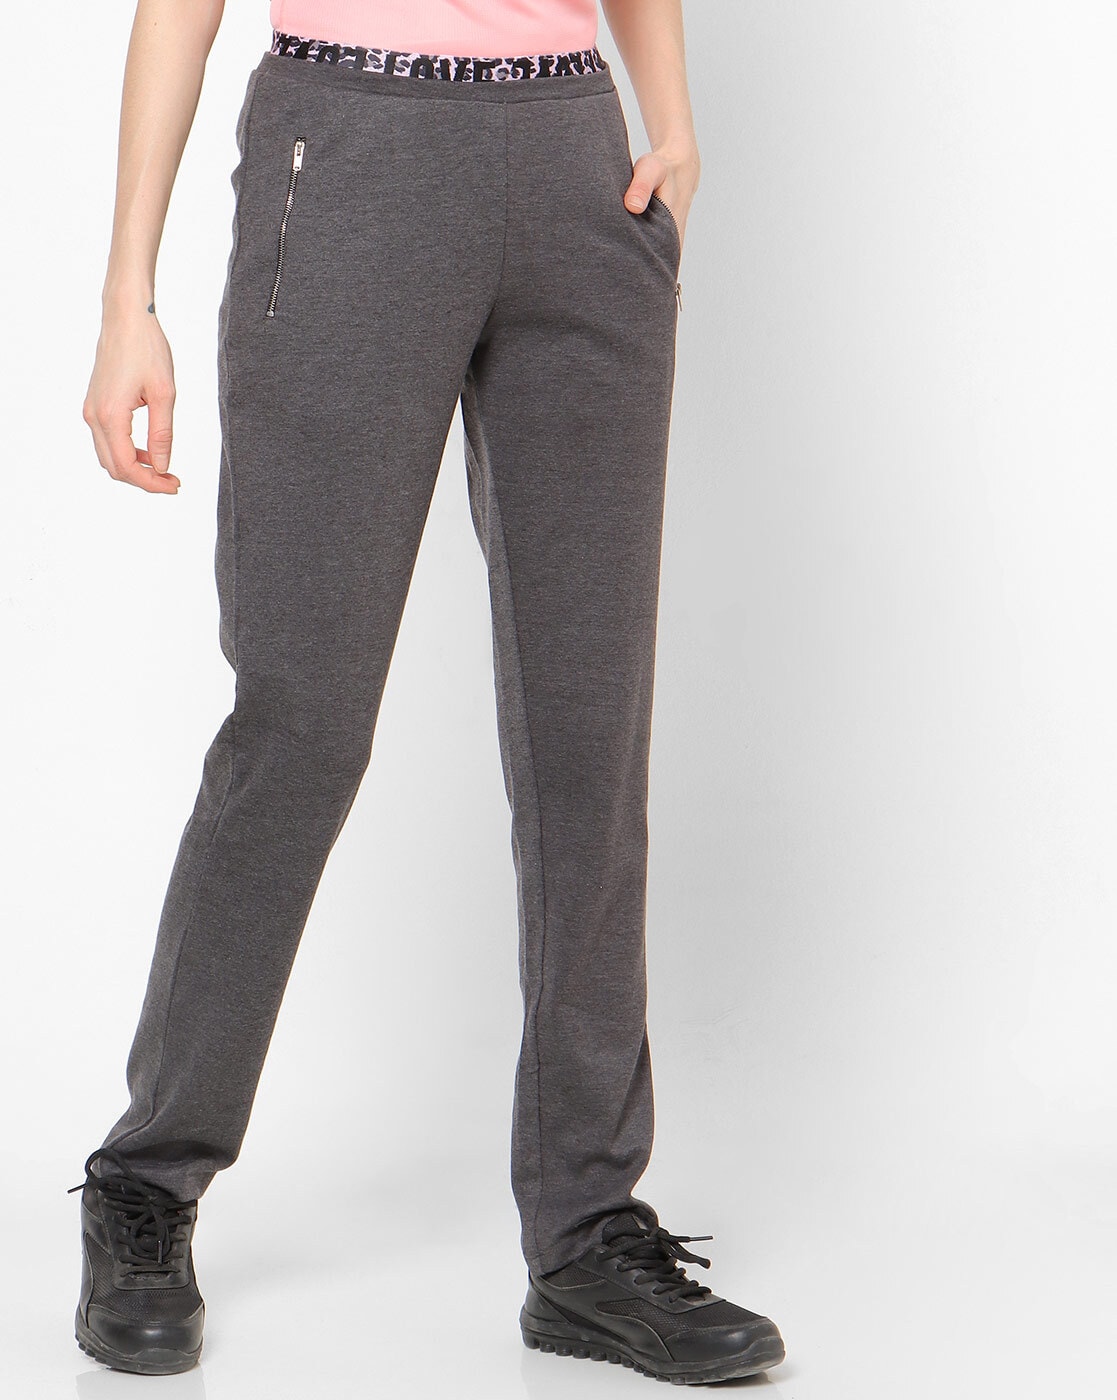 Zip Up Pants | zipOns Lightweight Pants With Zipper - befree